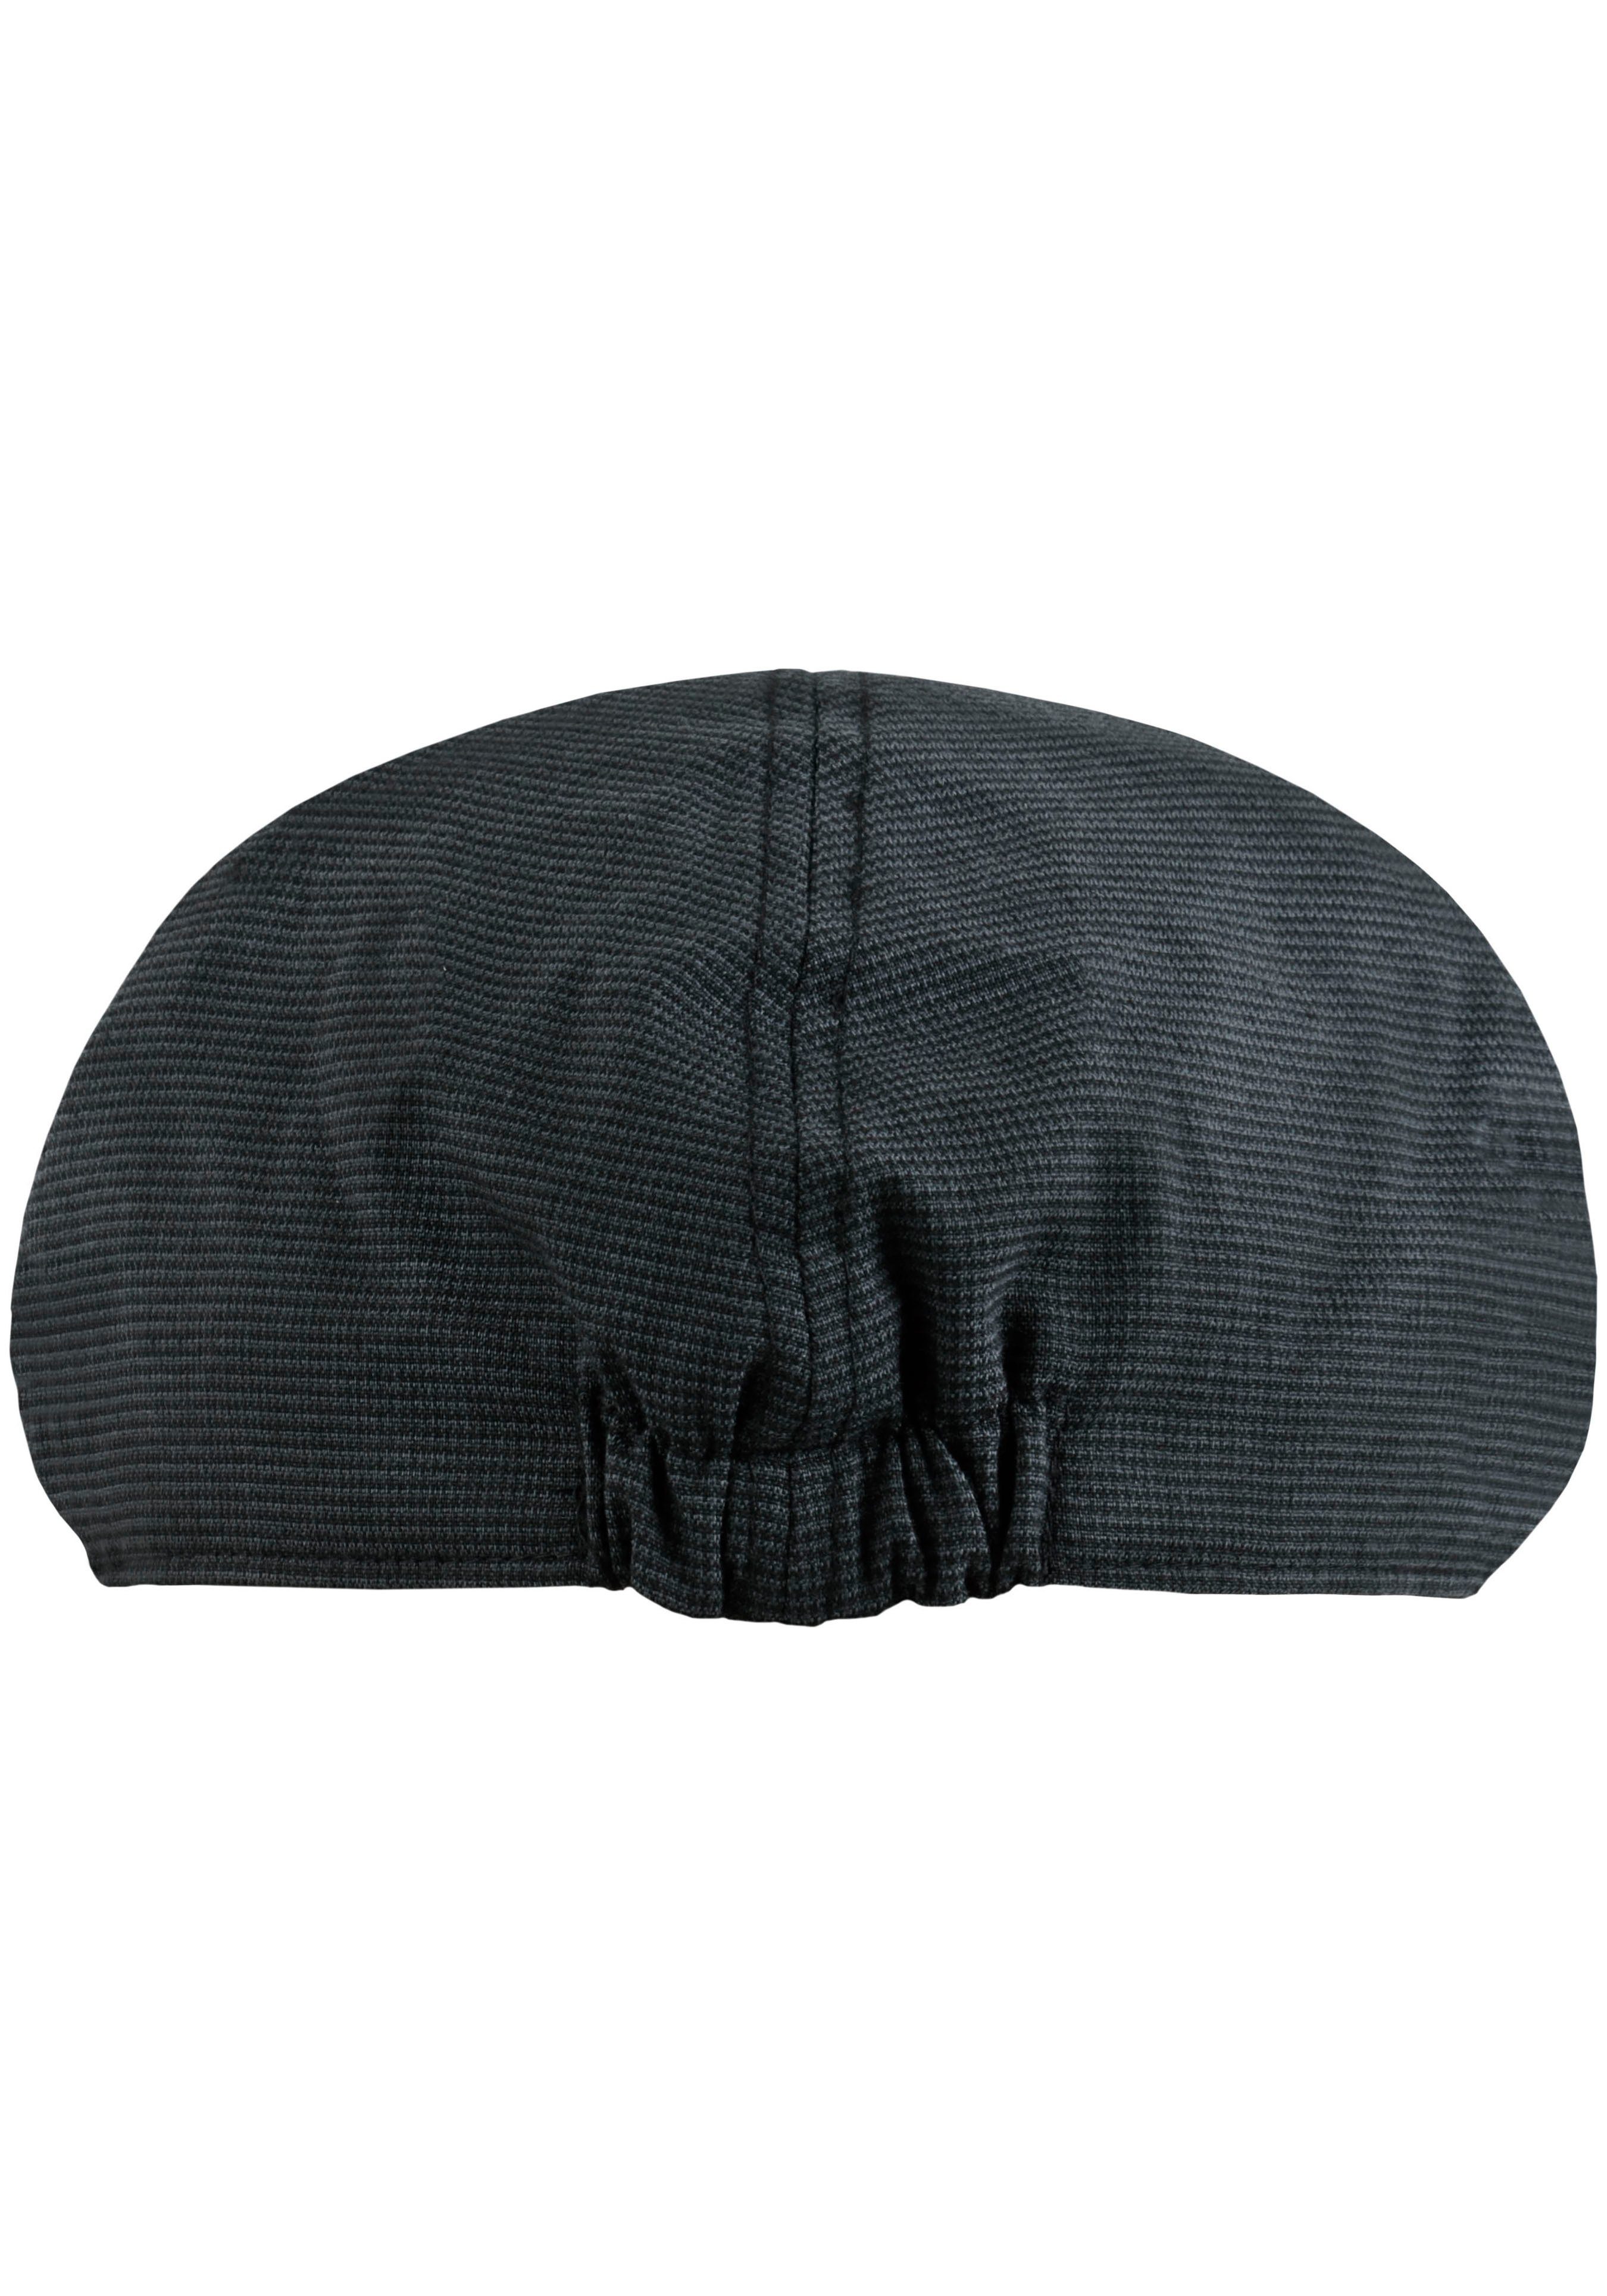 Kyoto feinem Karomuster grau-schwarz Schiebermütze chillouts Flat Cap mit Hat